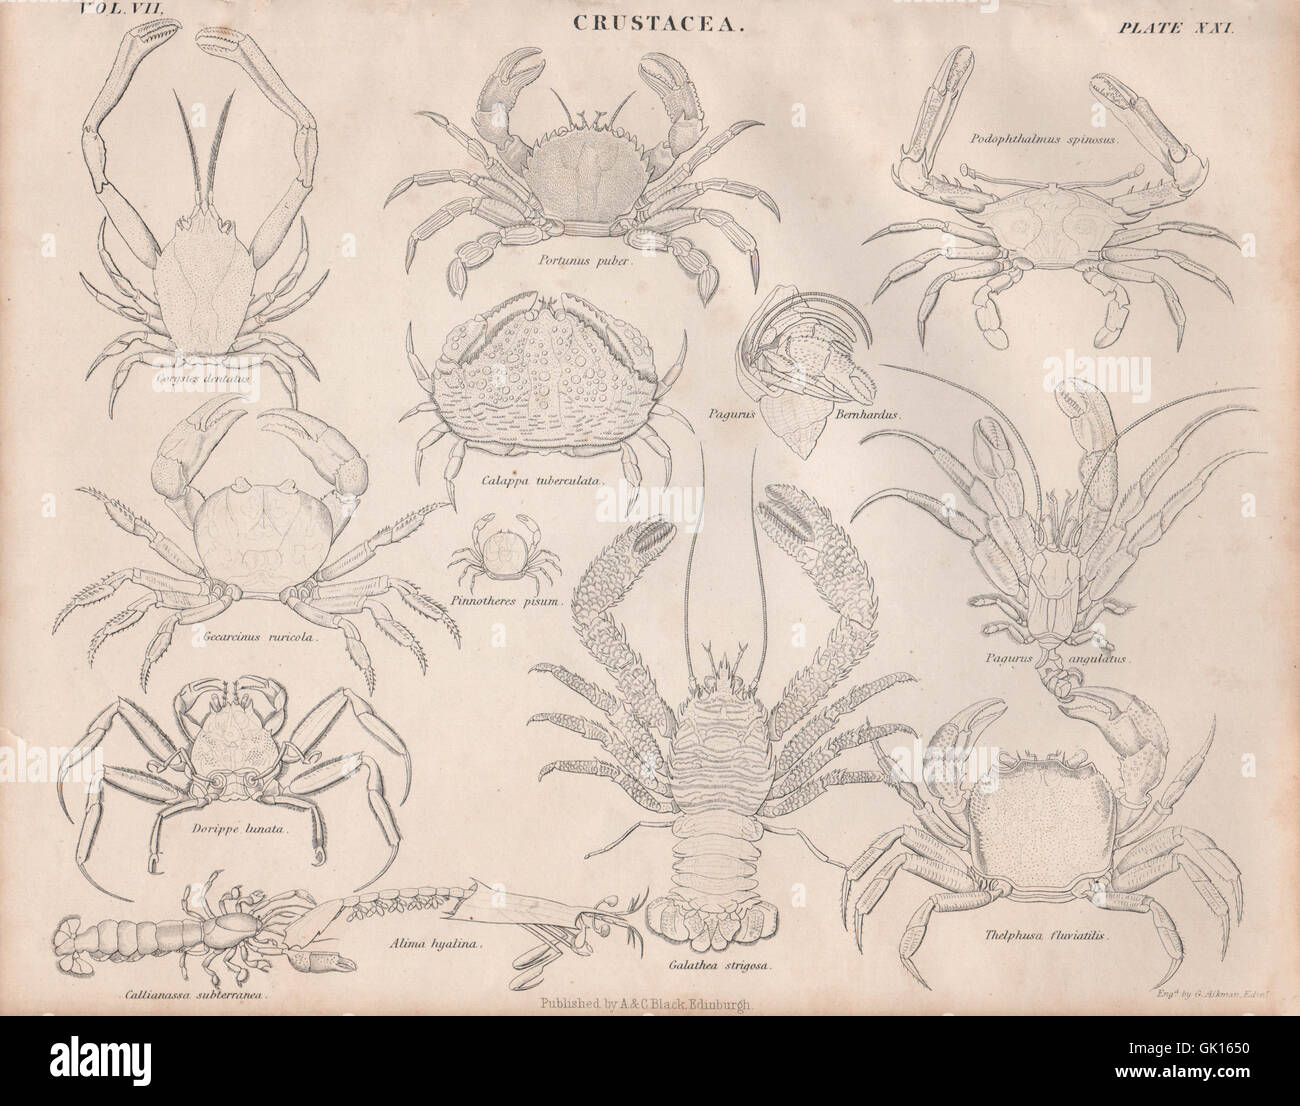 Crustacea. Corystes dentatus; Portunus puber; Podophthalmus spinosus, 1860 Stock Photo